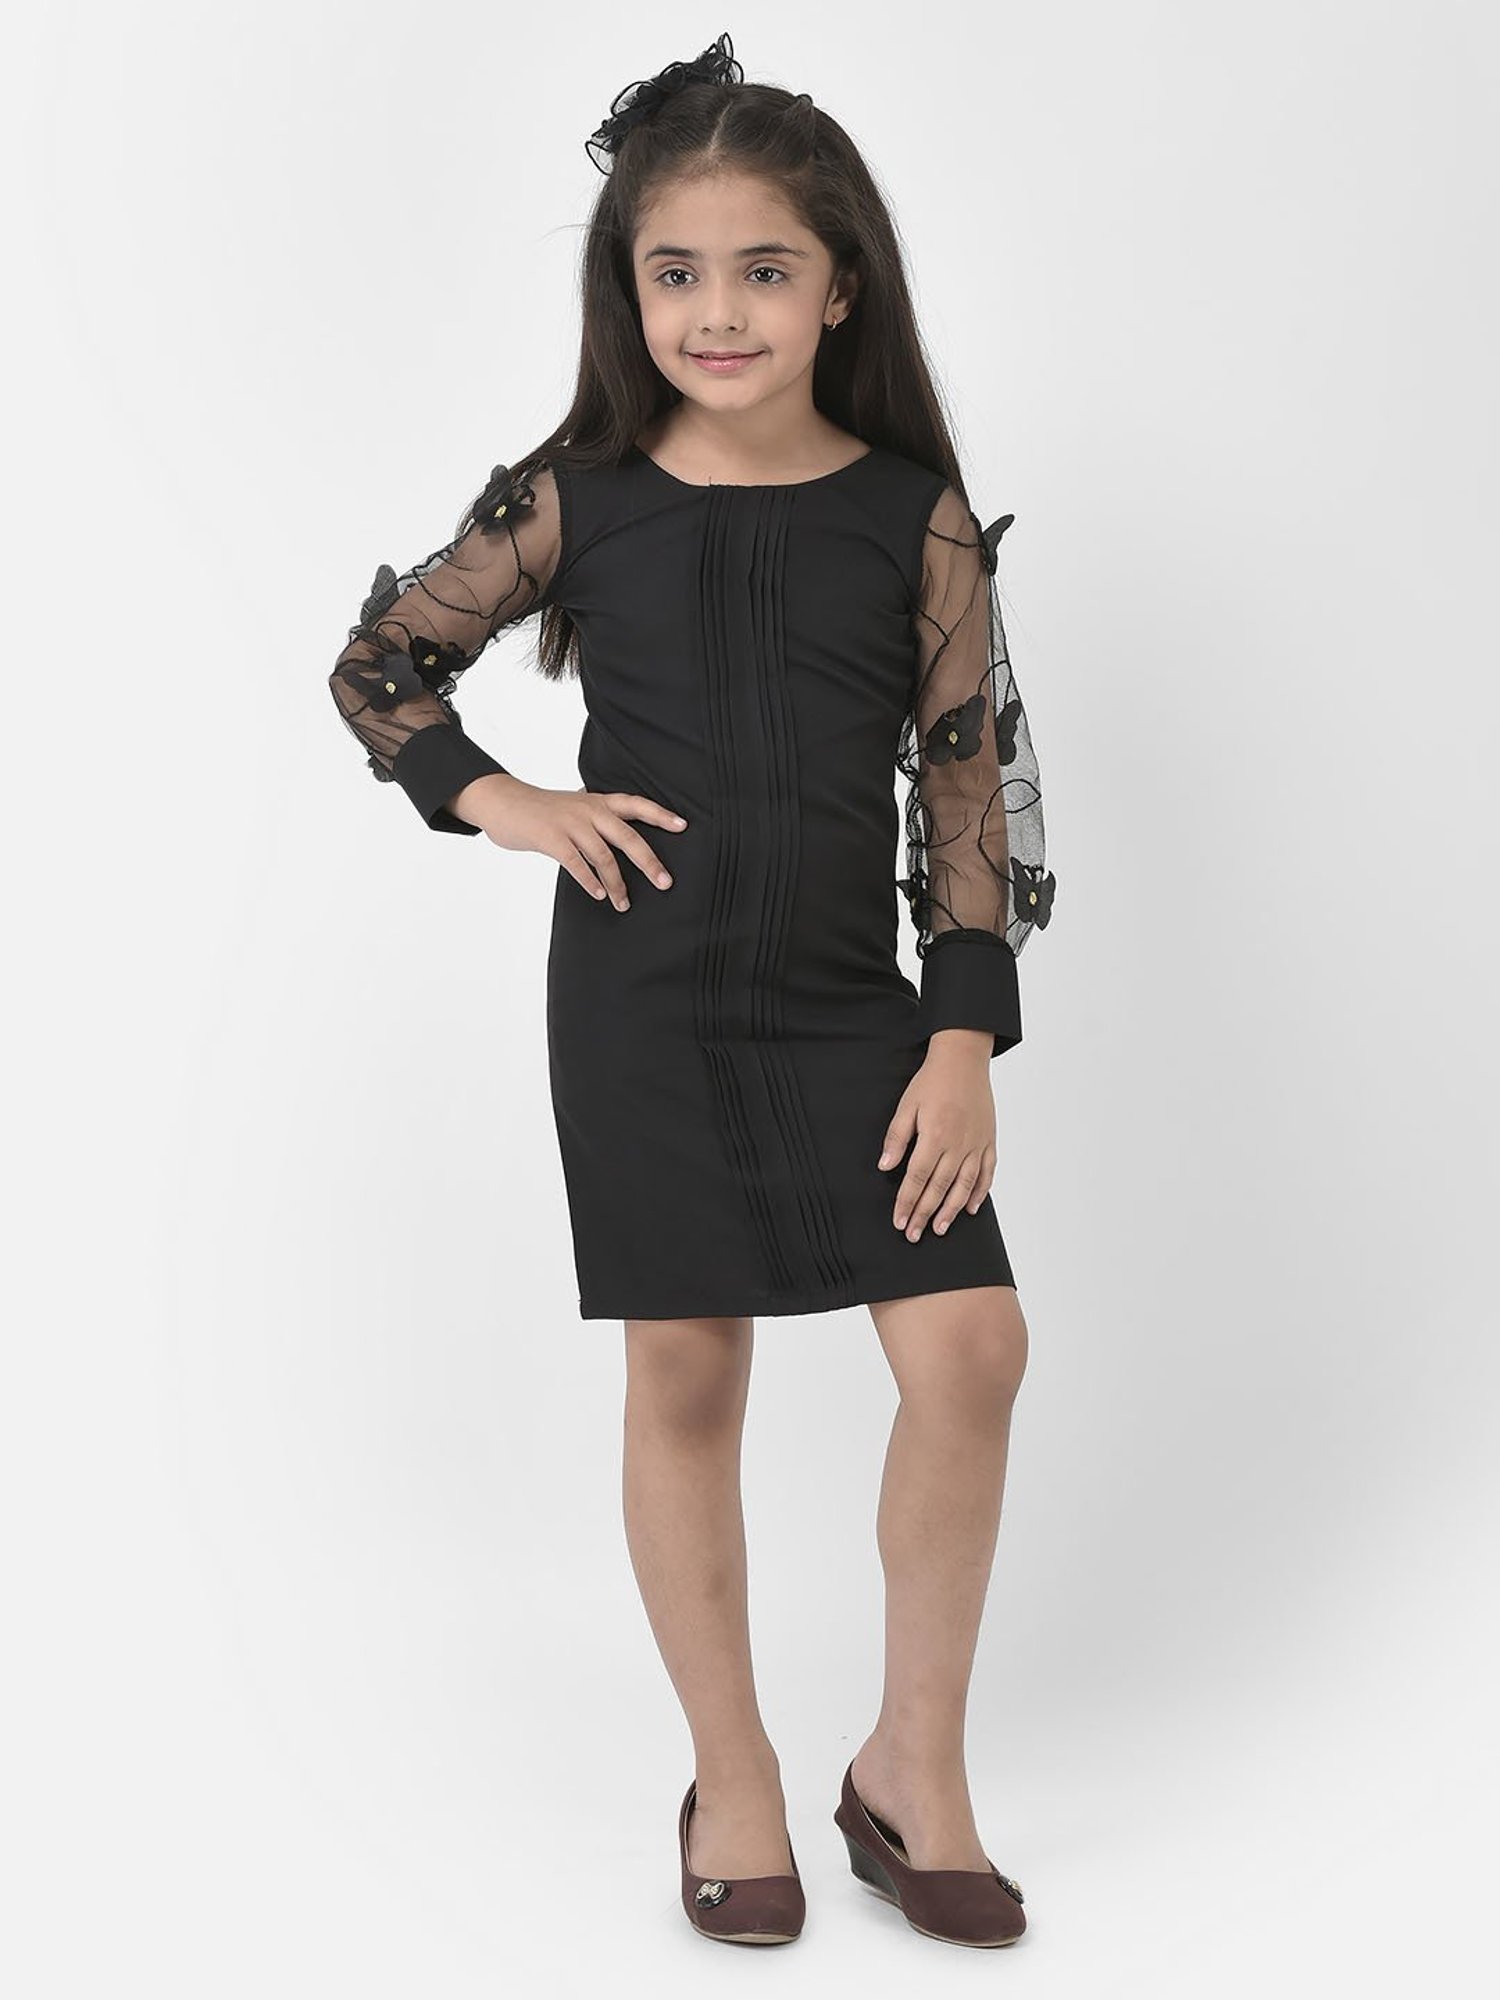 Black Neoprene Floral Embellished Dress For Girls Design by The Little  celebs at Pernia's Pop Up Shop 2024